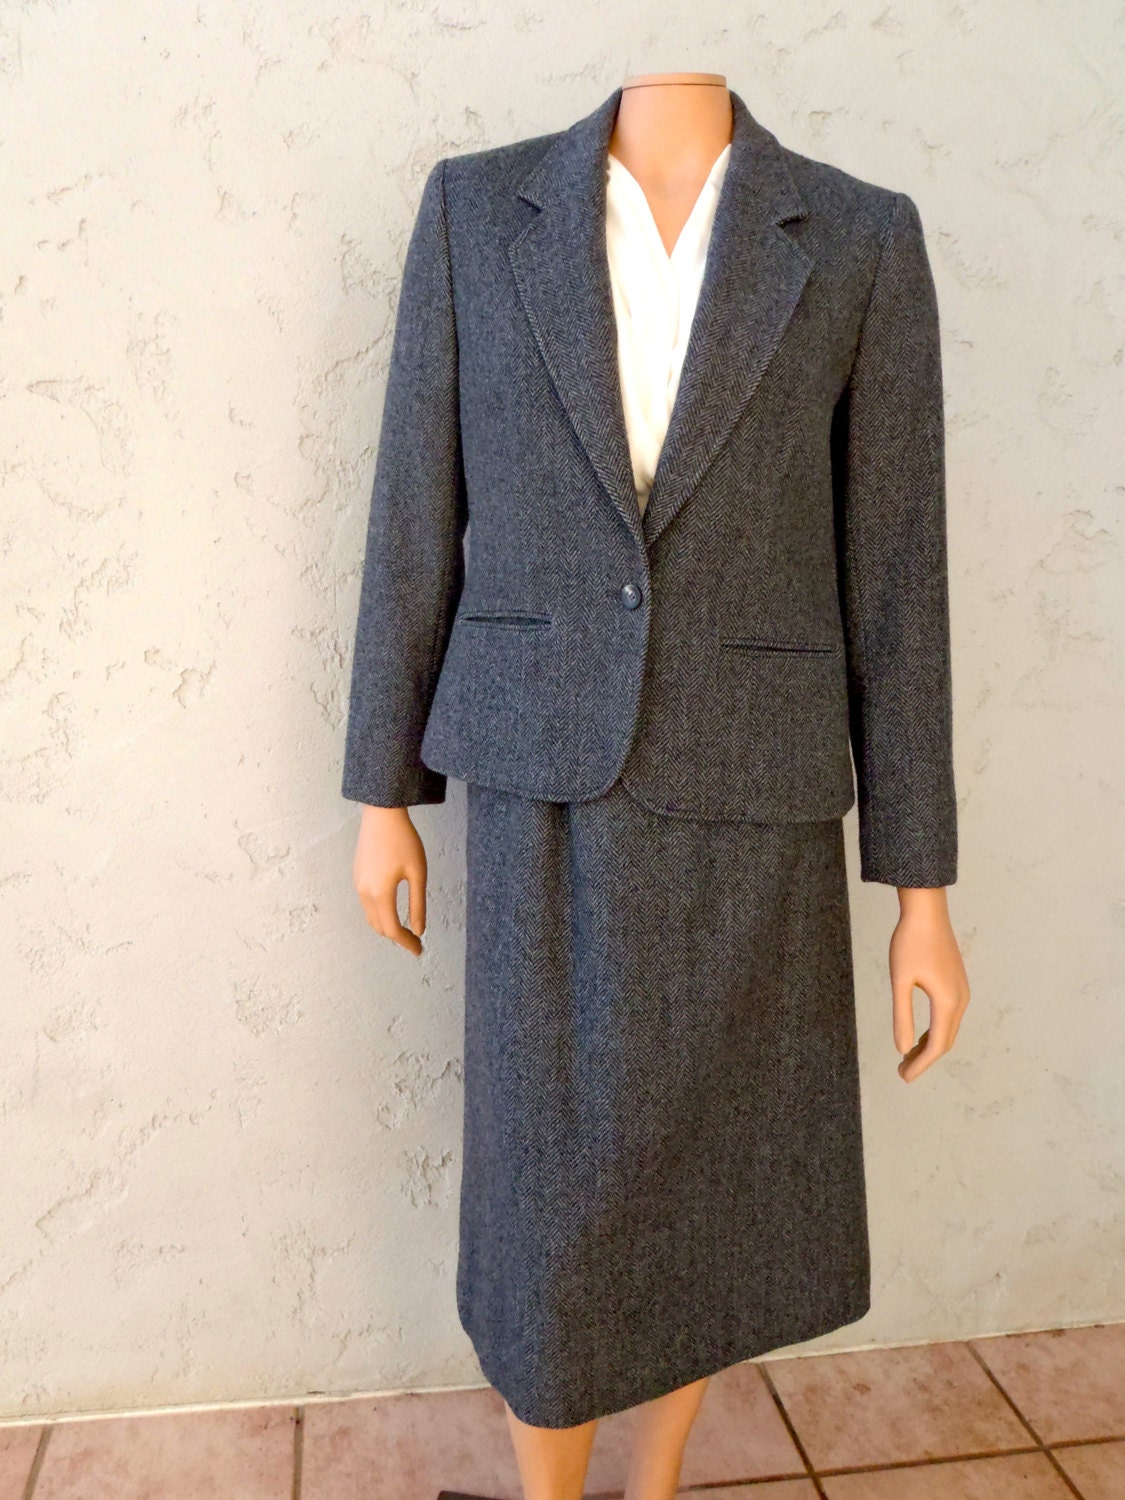 Pendleton Virgin Wool Skirt and Jacket Suit / Vintage